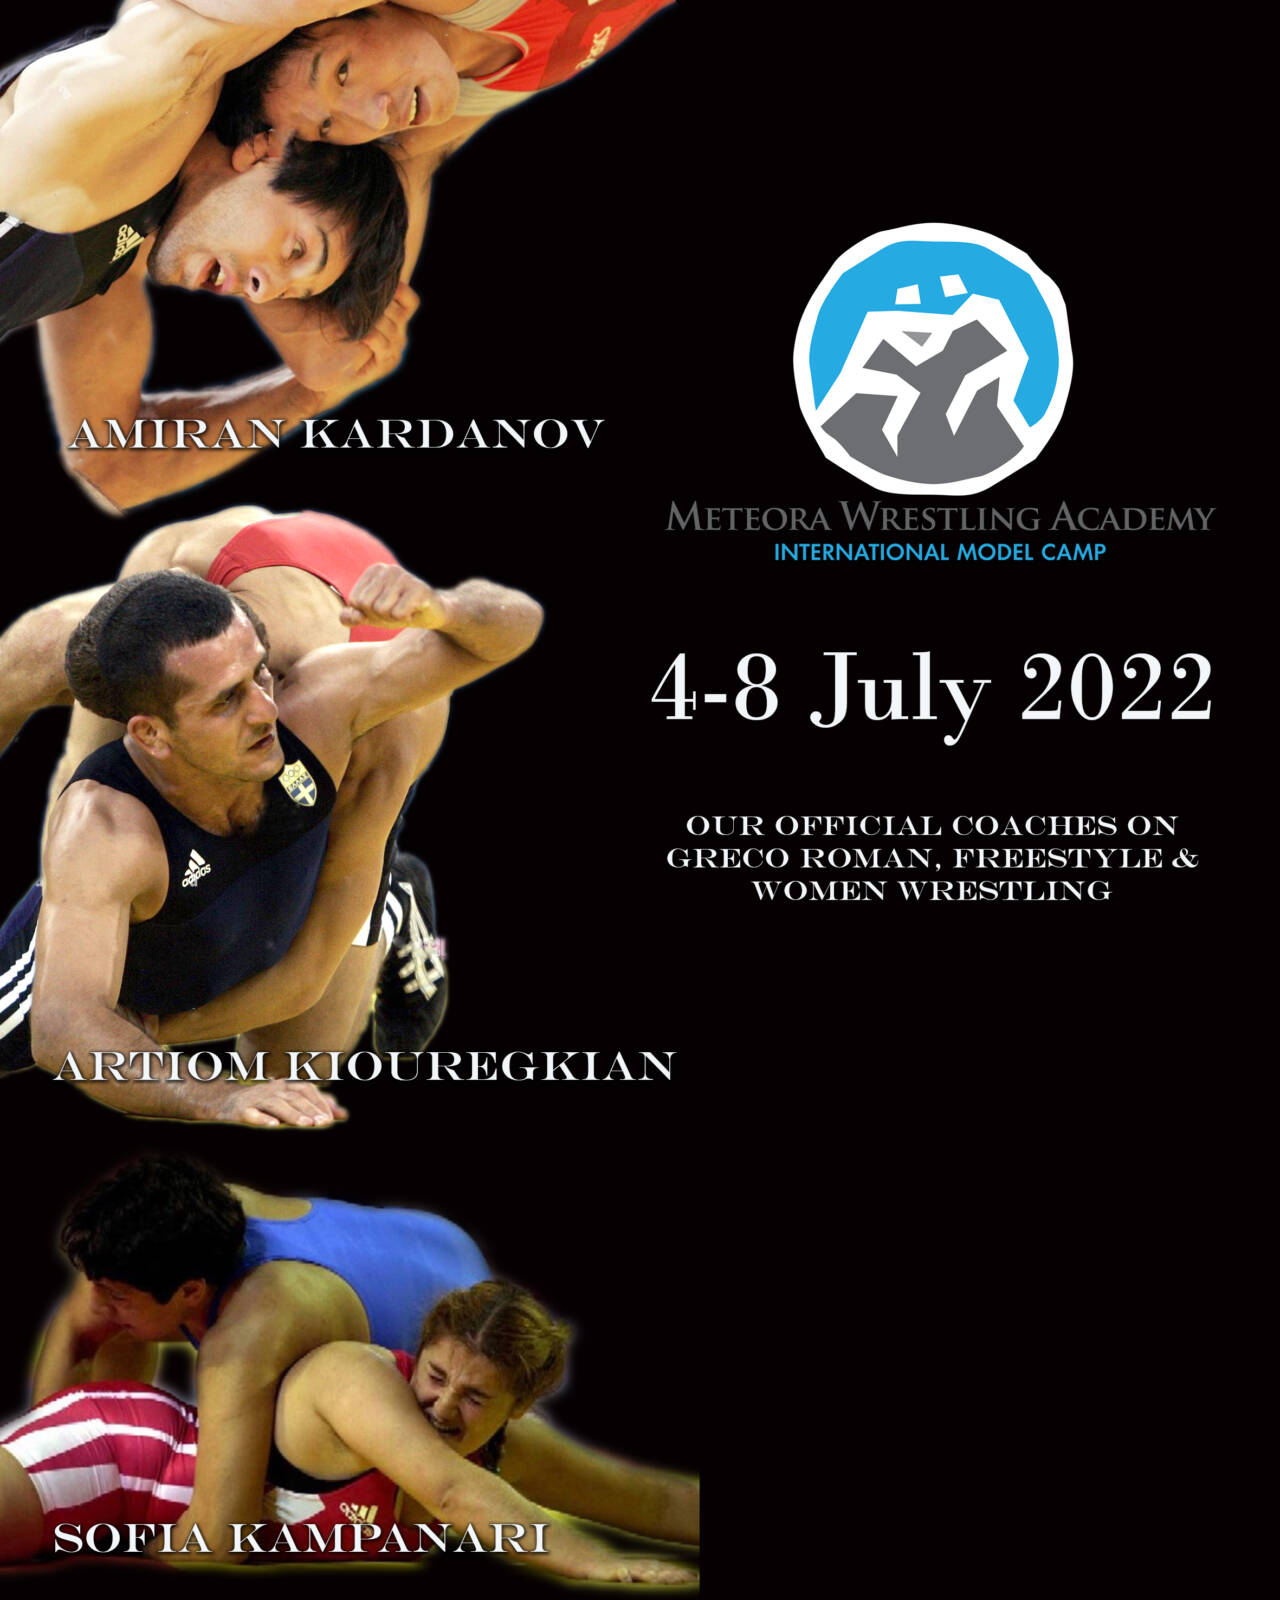 Δήμος Mετεώρων: Θα πραγματοποιηθεί το Διεθνές Τουρνουά Πάλης στο Δημοτικό Κλειστό Γυμναστήριο Τρικάλων από τις 4 μέχρι τις 8 Ιουλίου 2022-Meteora Wrestling Academy 2022